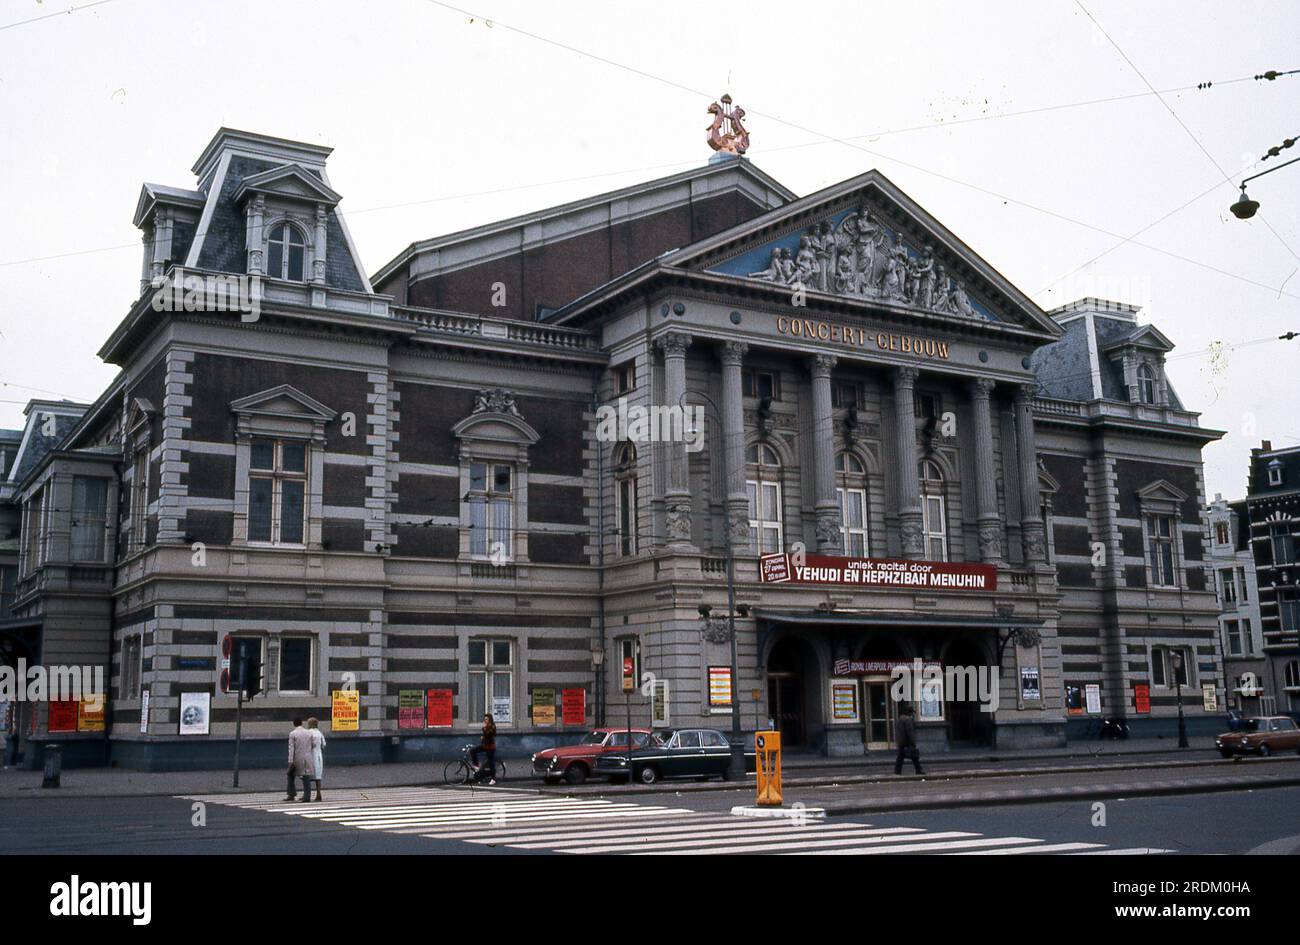 Concertgebouw Building, Amsterdam, Niederlande. Einer der besten Konzertsäle der Welt, zusammen mit der Boston Symphony Hall und dem Musikverein in Wien, Österreich. Stockfoto